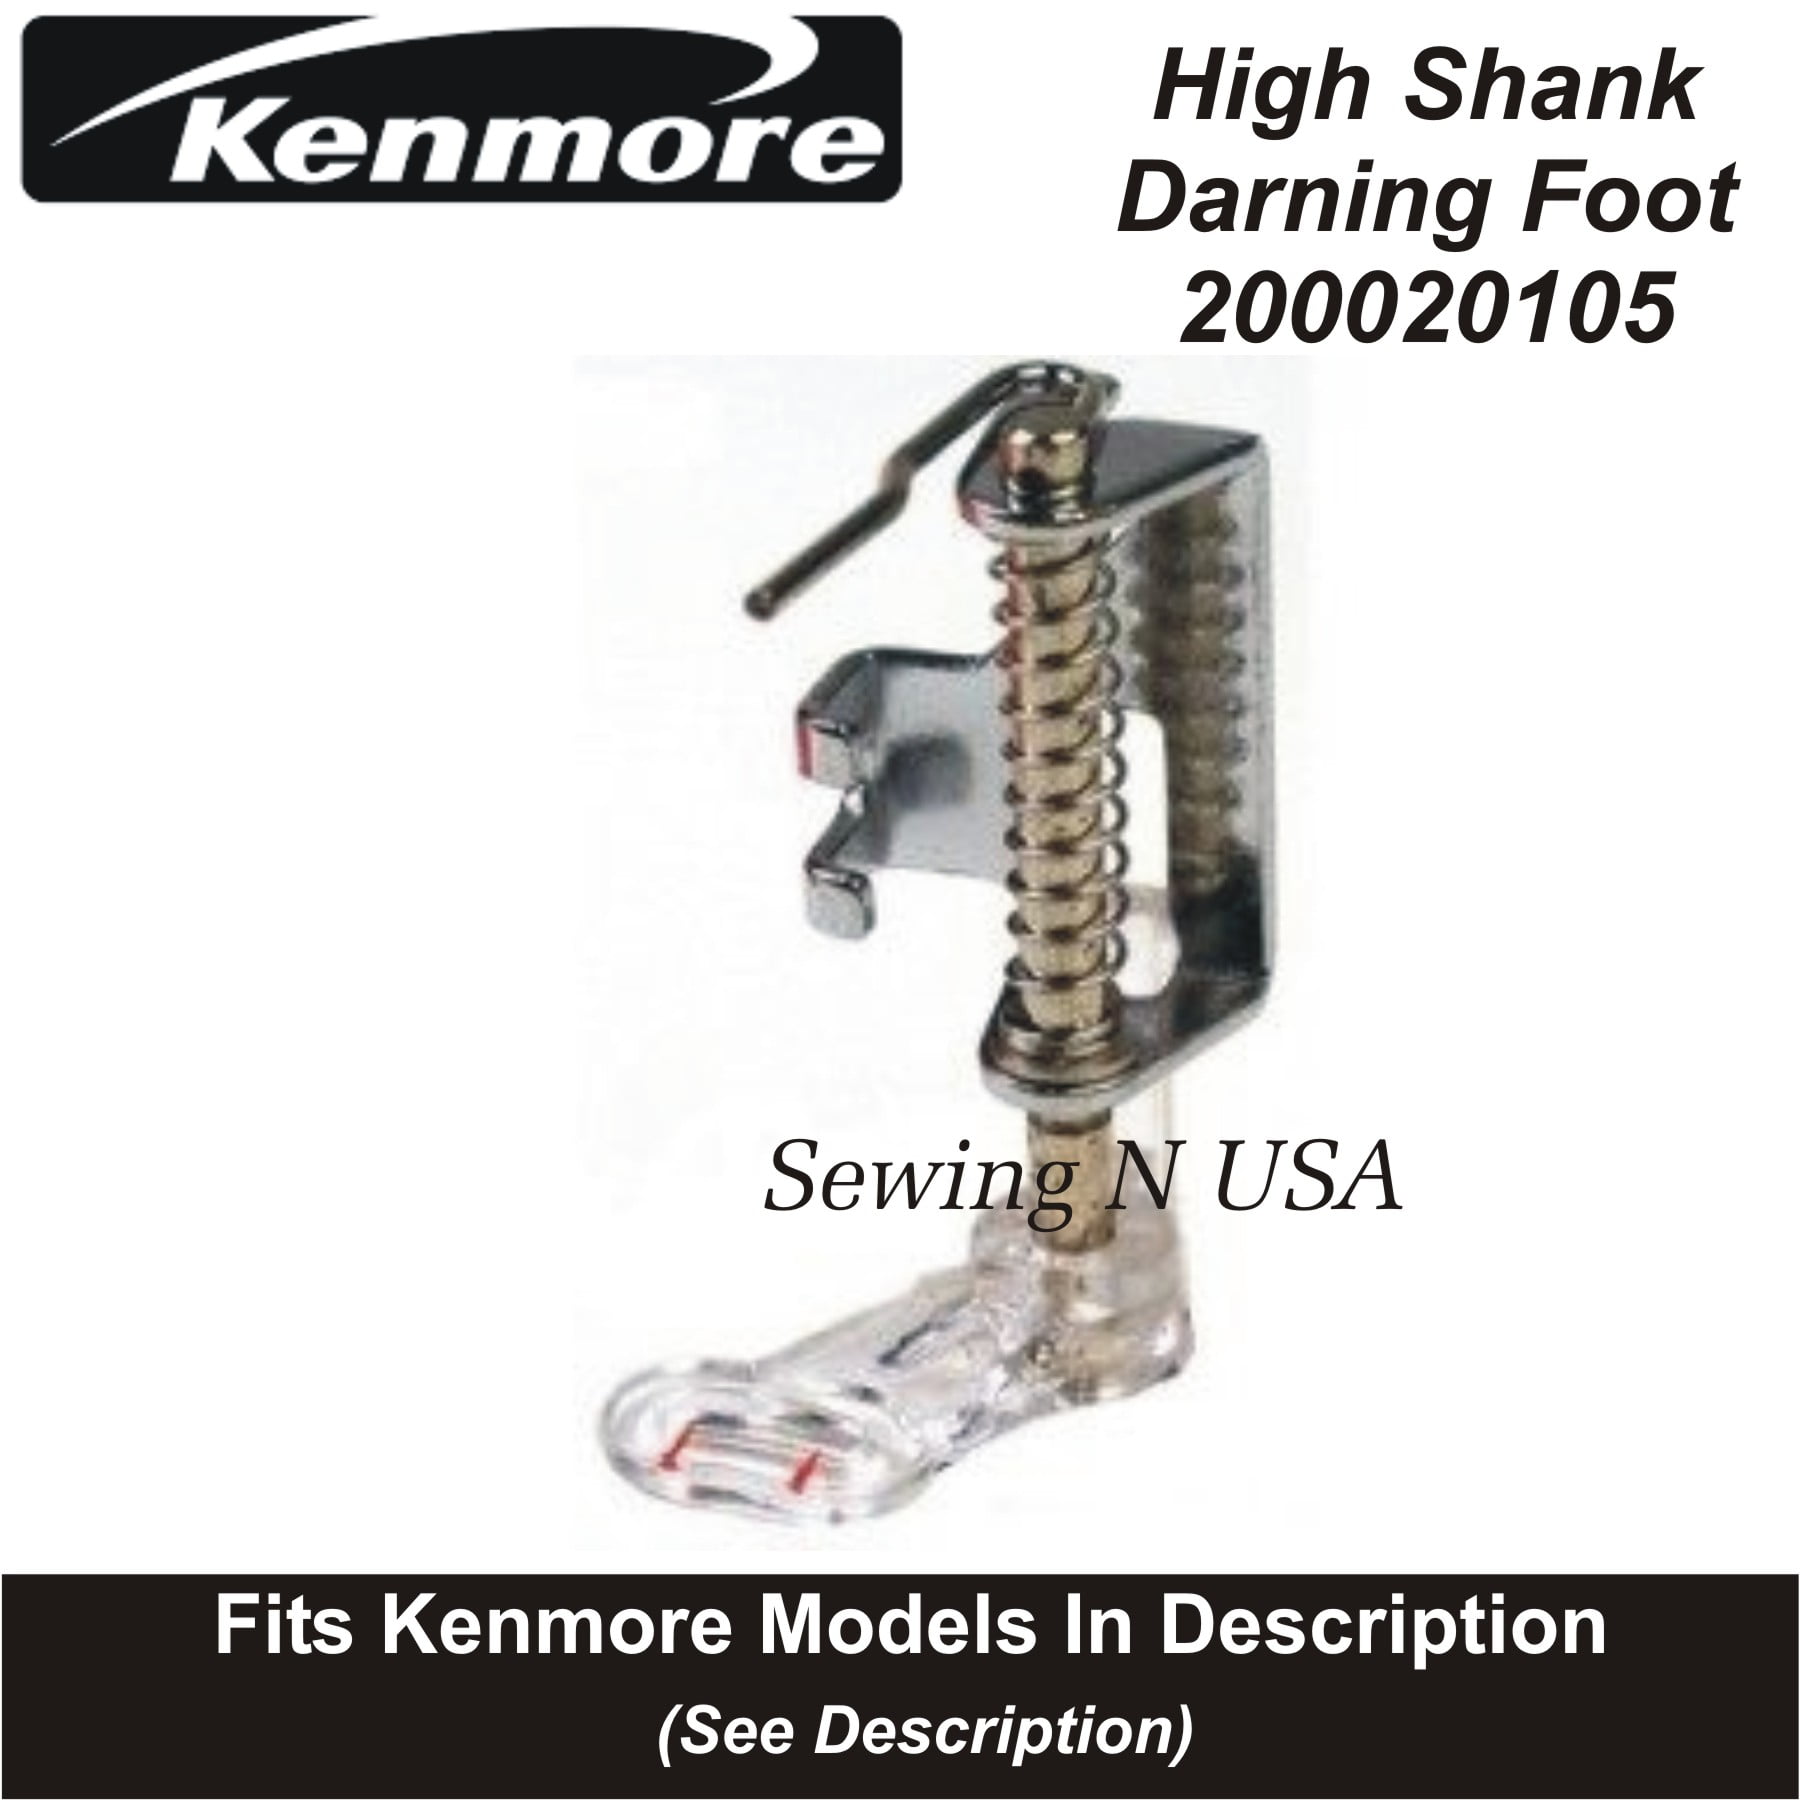 Kenmore Low Shank Walking Foot 10449-J Fits Models In Description